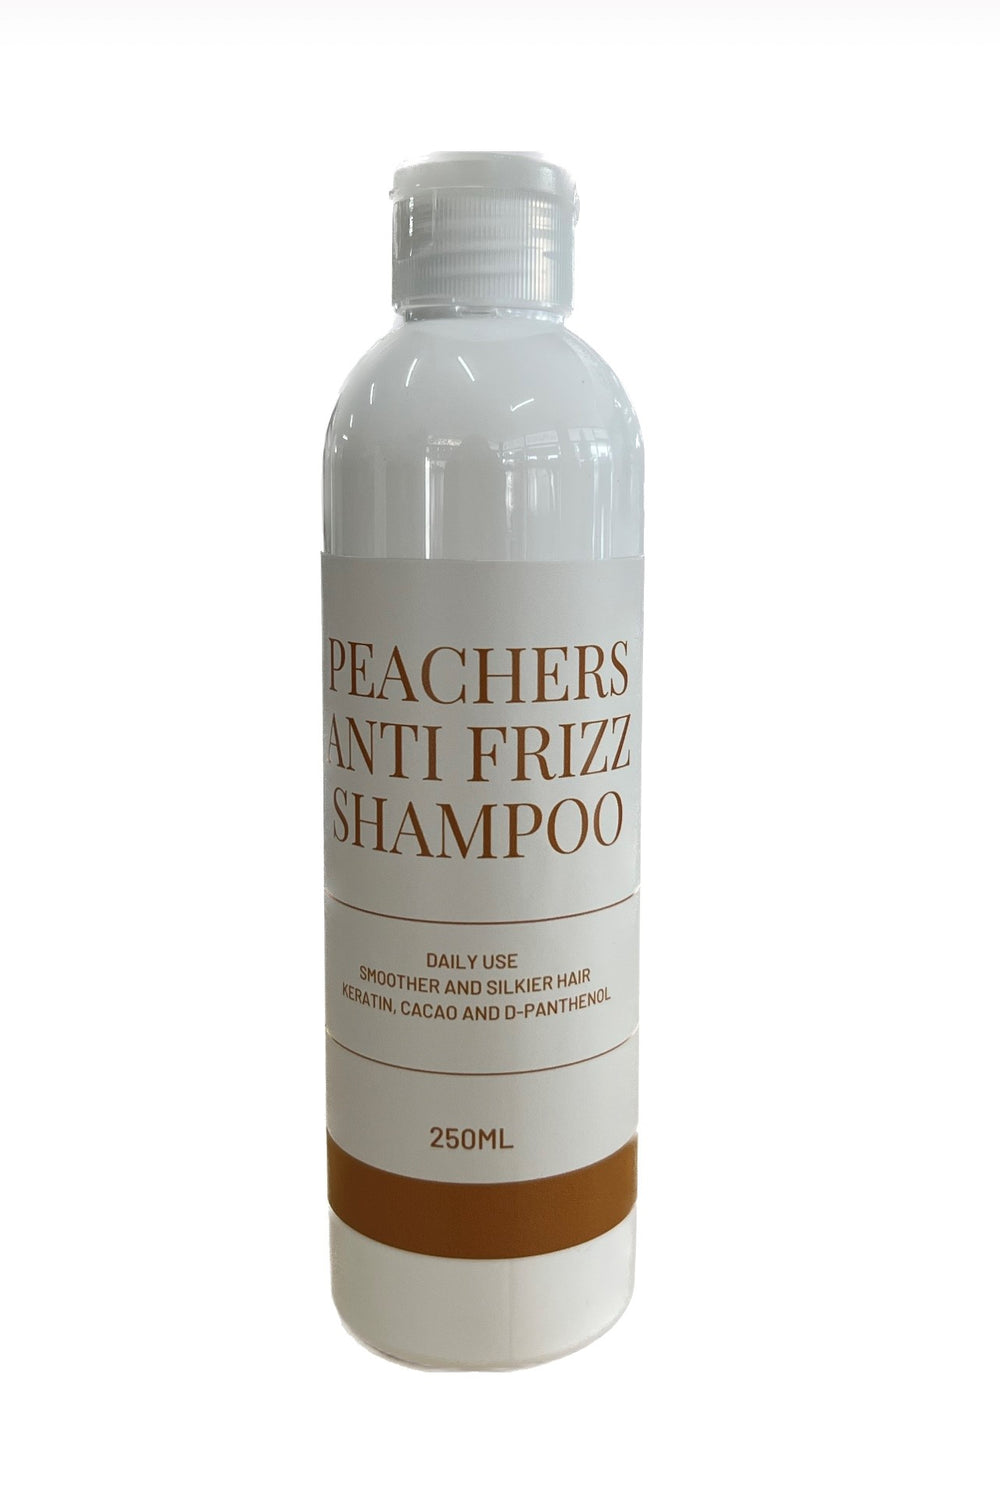 Peachers anti frizz shampoo 250ml